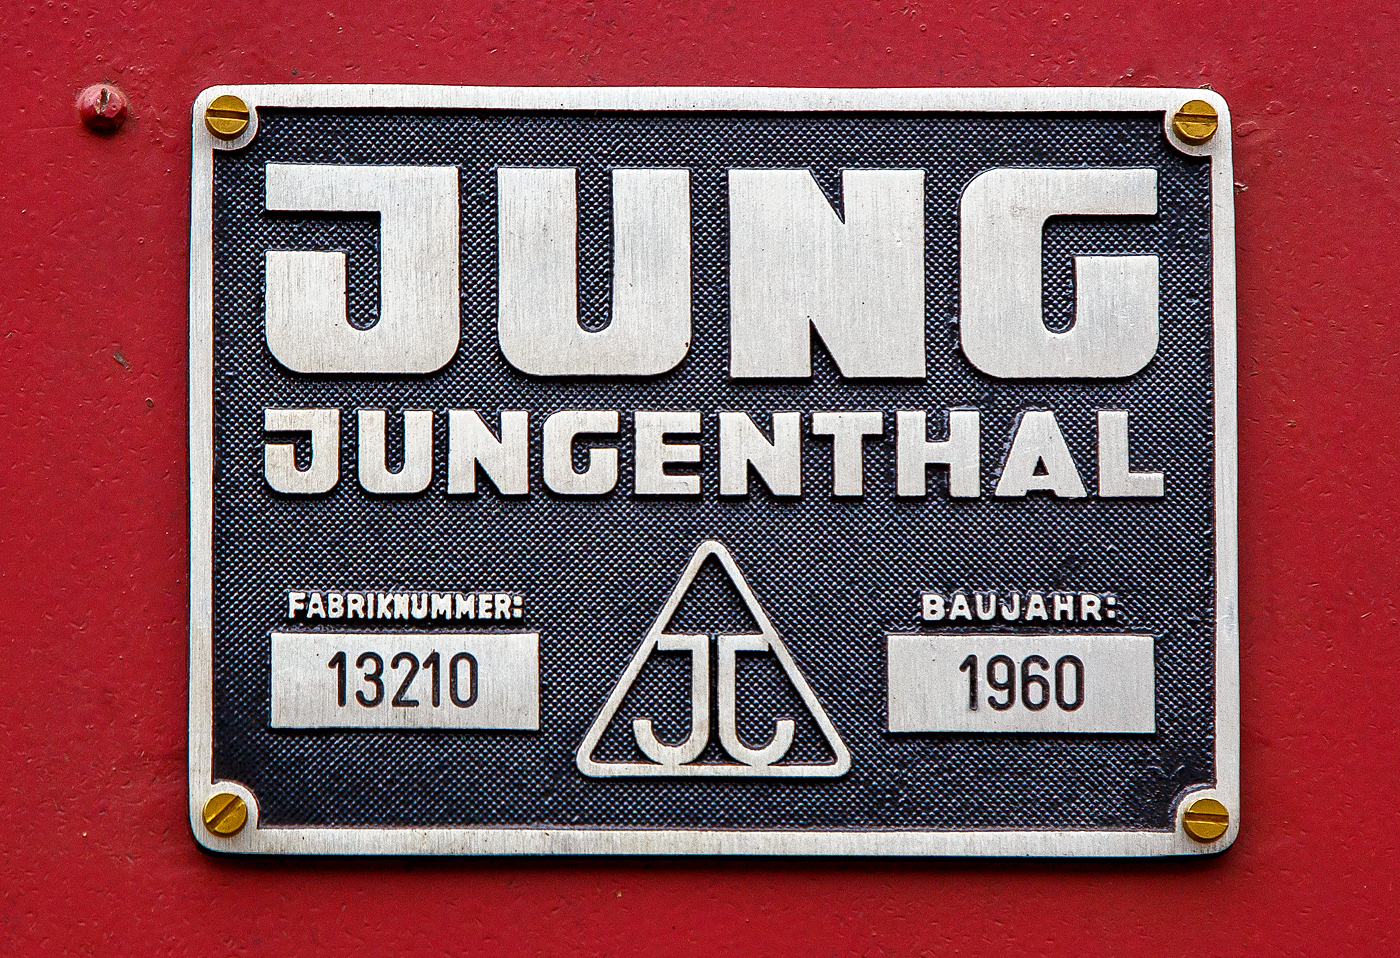 Jung-Fabrikschild der ex DB 323 842-5, ex DB Köf 6772, der Westerwälder Eisenbahnfreunde 44 508 e. V., ausgestellt am 02.07.2023 beim Erlebnisbahnhof Westerwald in Westerburg, hier war Lokschuppen-/Sommerfest.